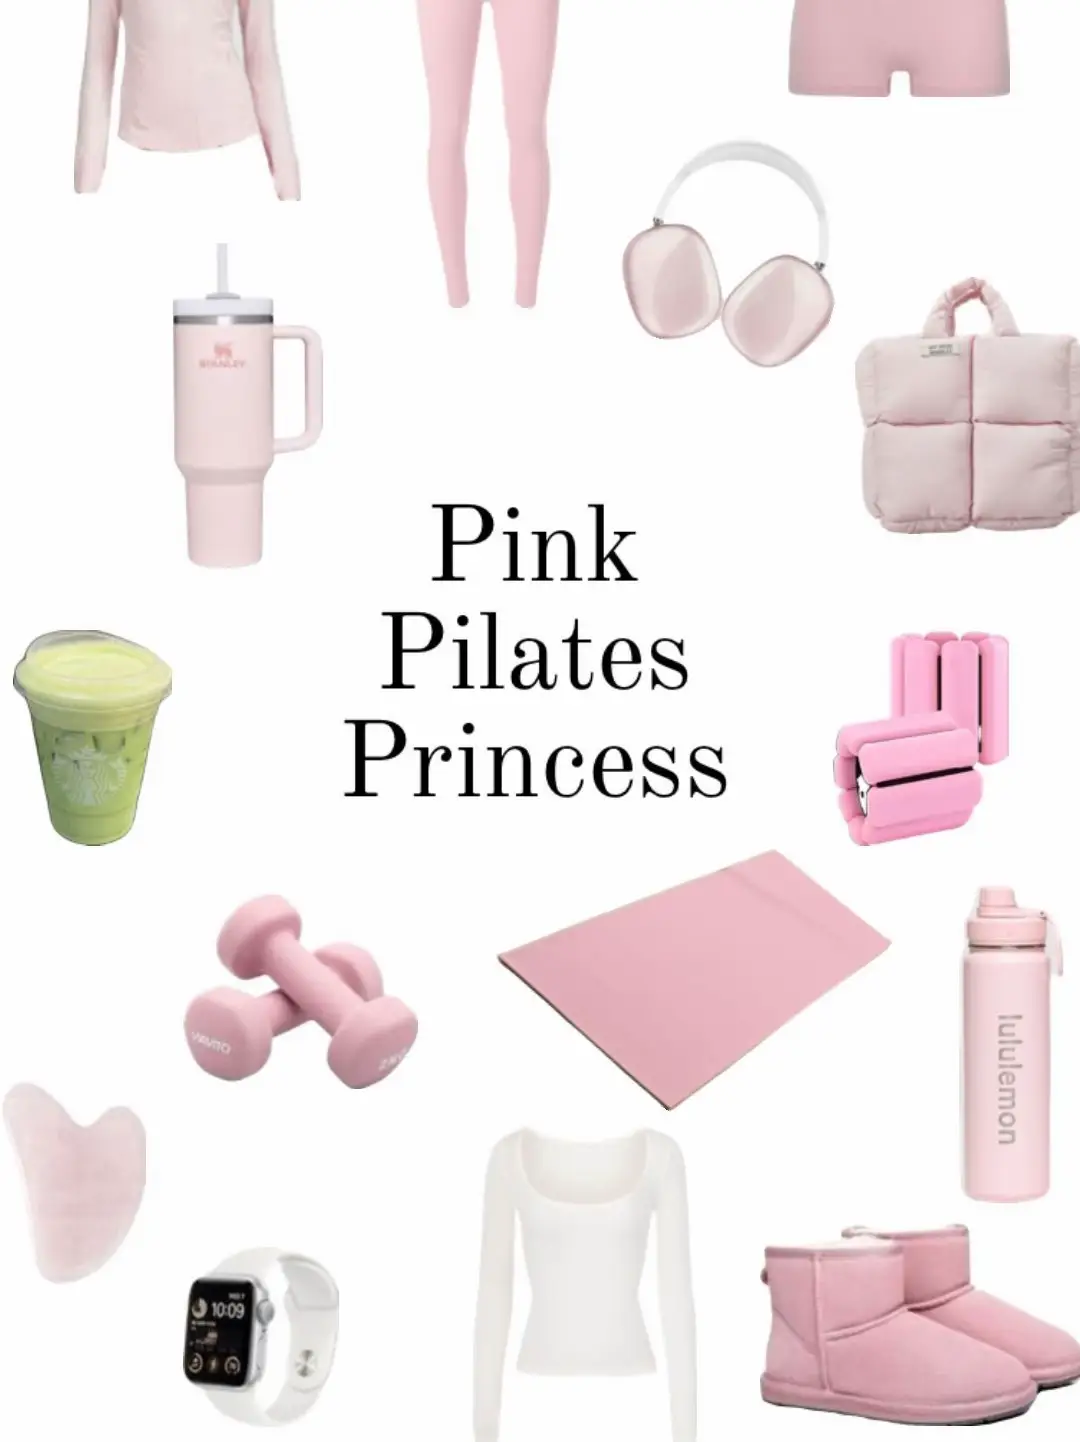 pink pilates princess outfits!!!